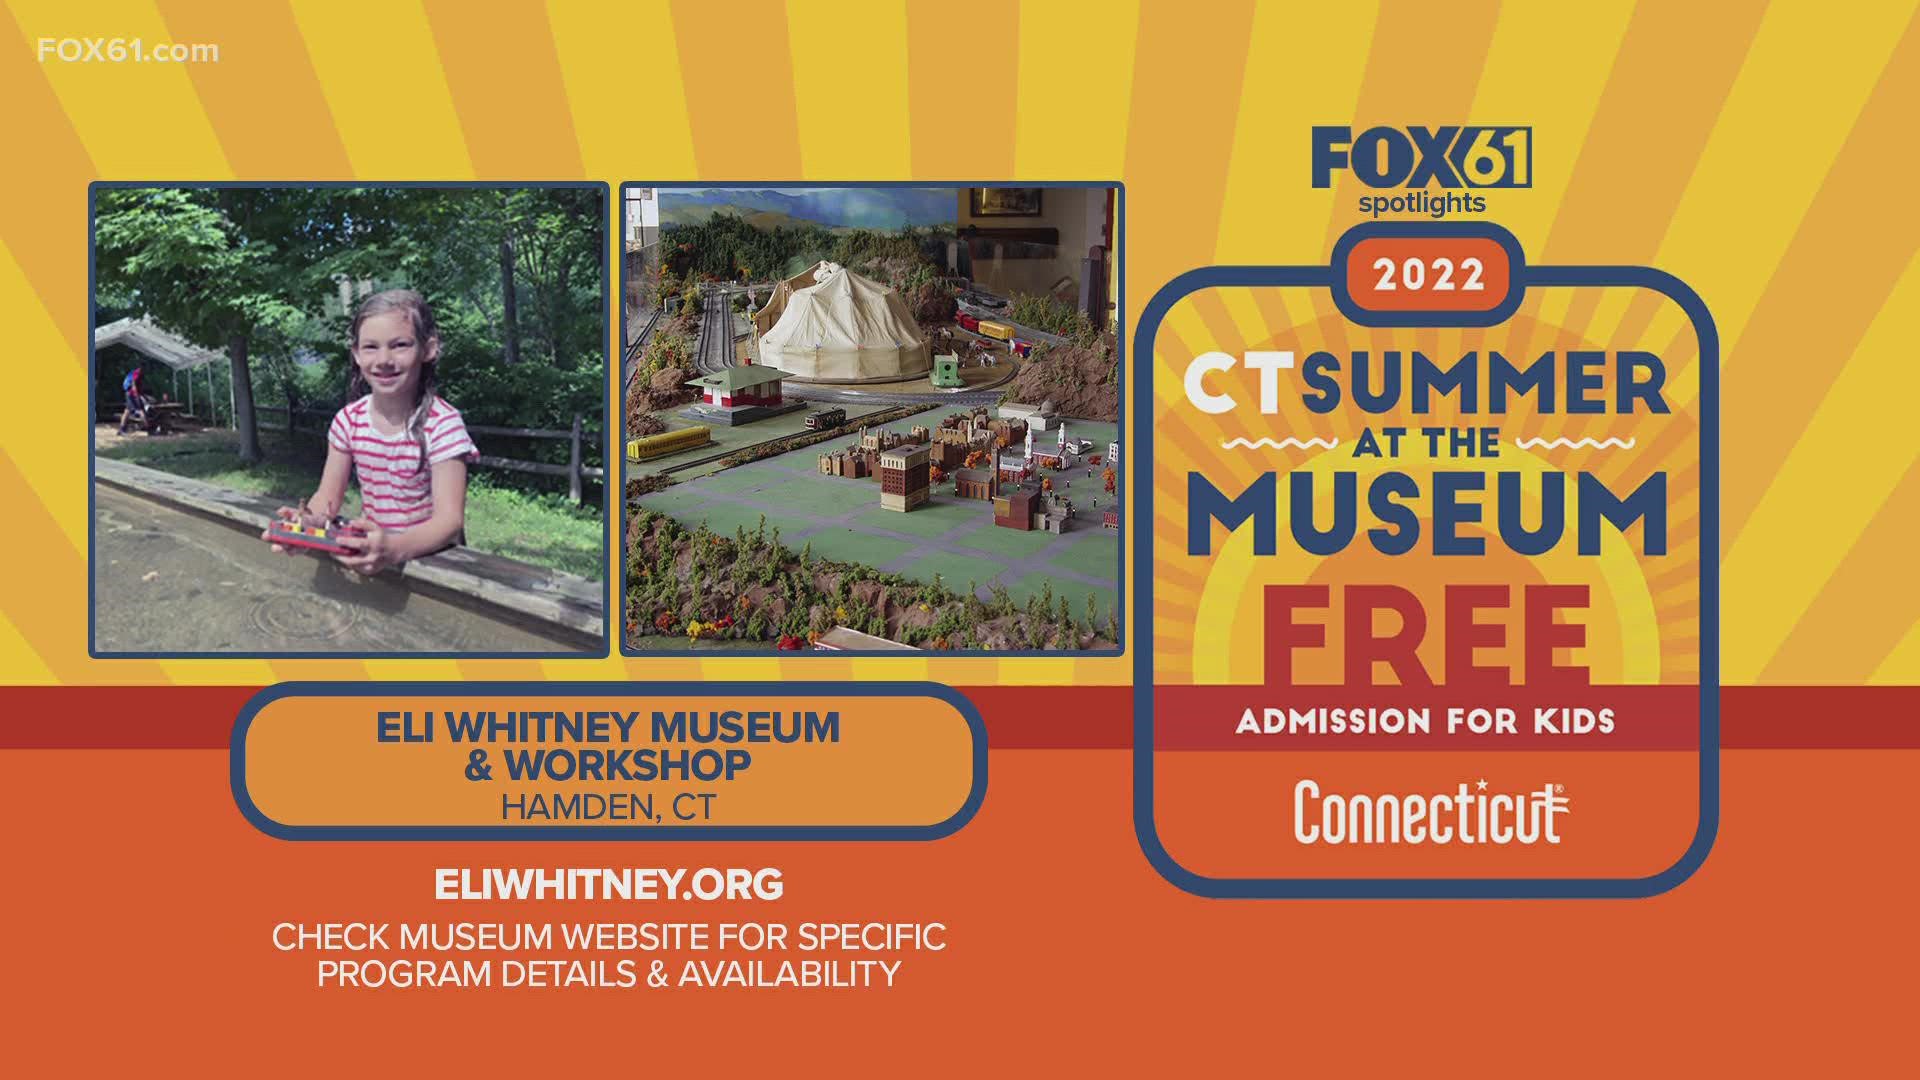 18岁及以下的孩子可以和康涅狄格州居民的成年人一起免费参观伊莱·惠特尼博物馆和工作室。它将持续到9月5日。